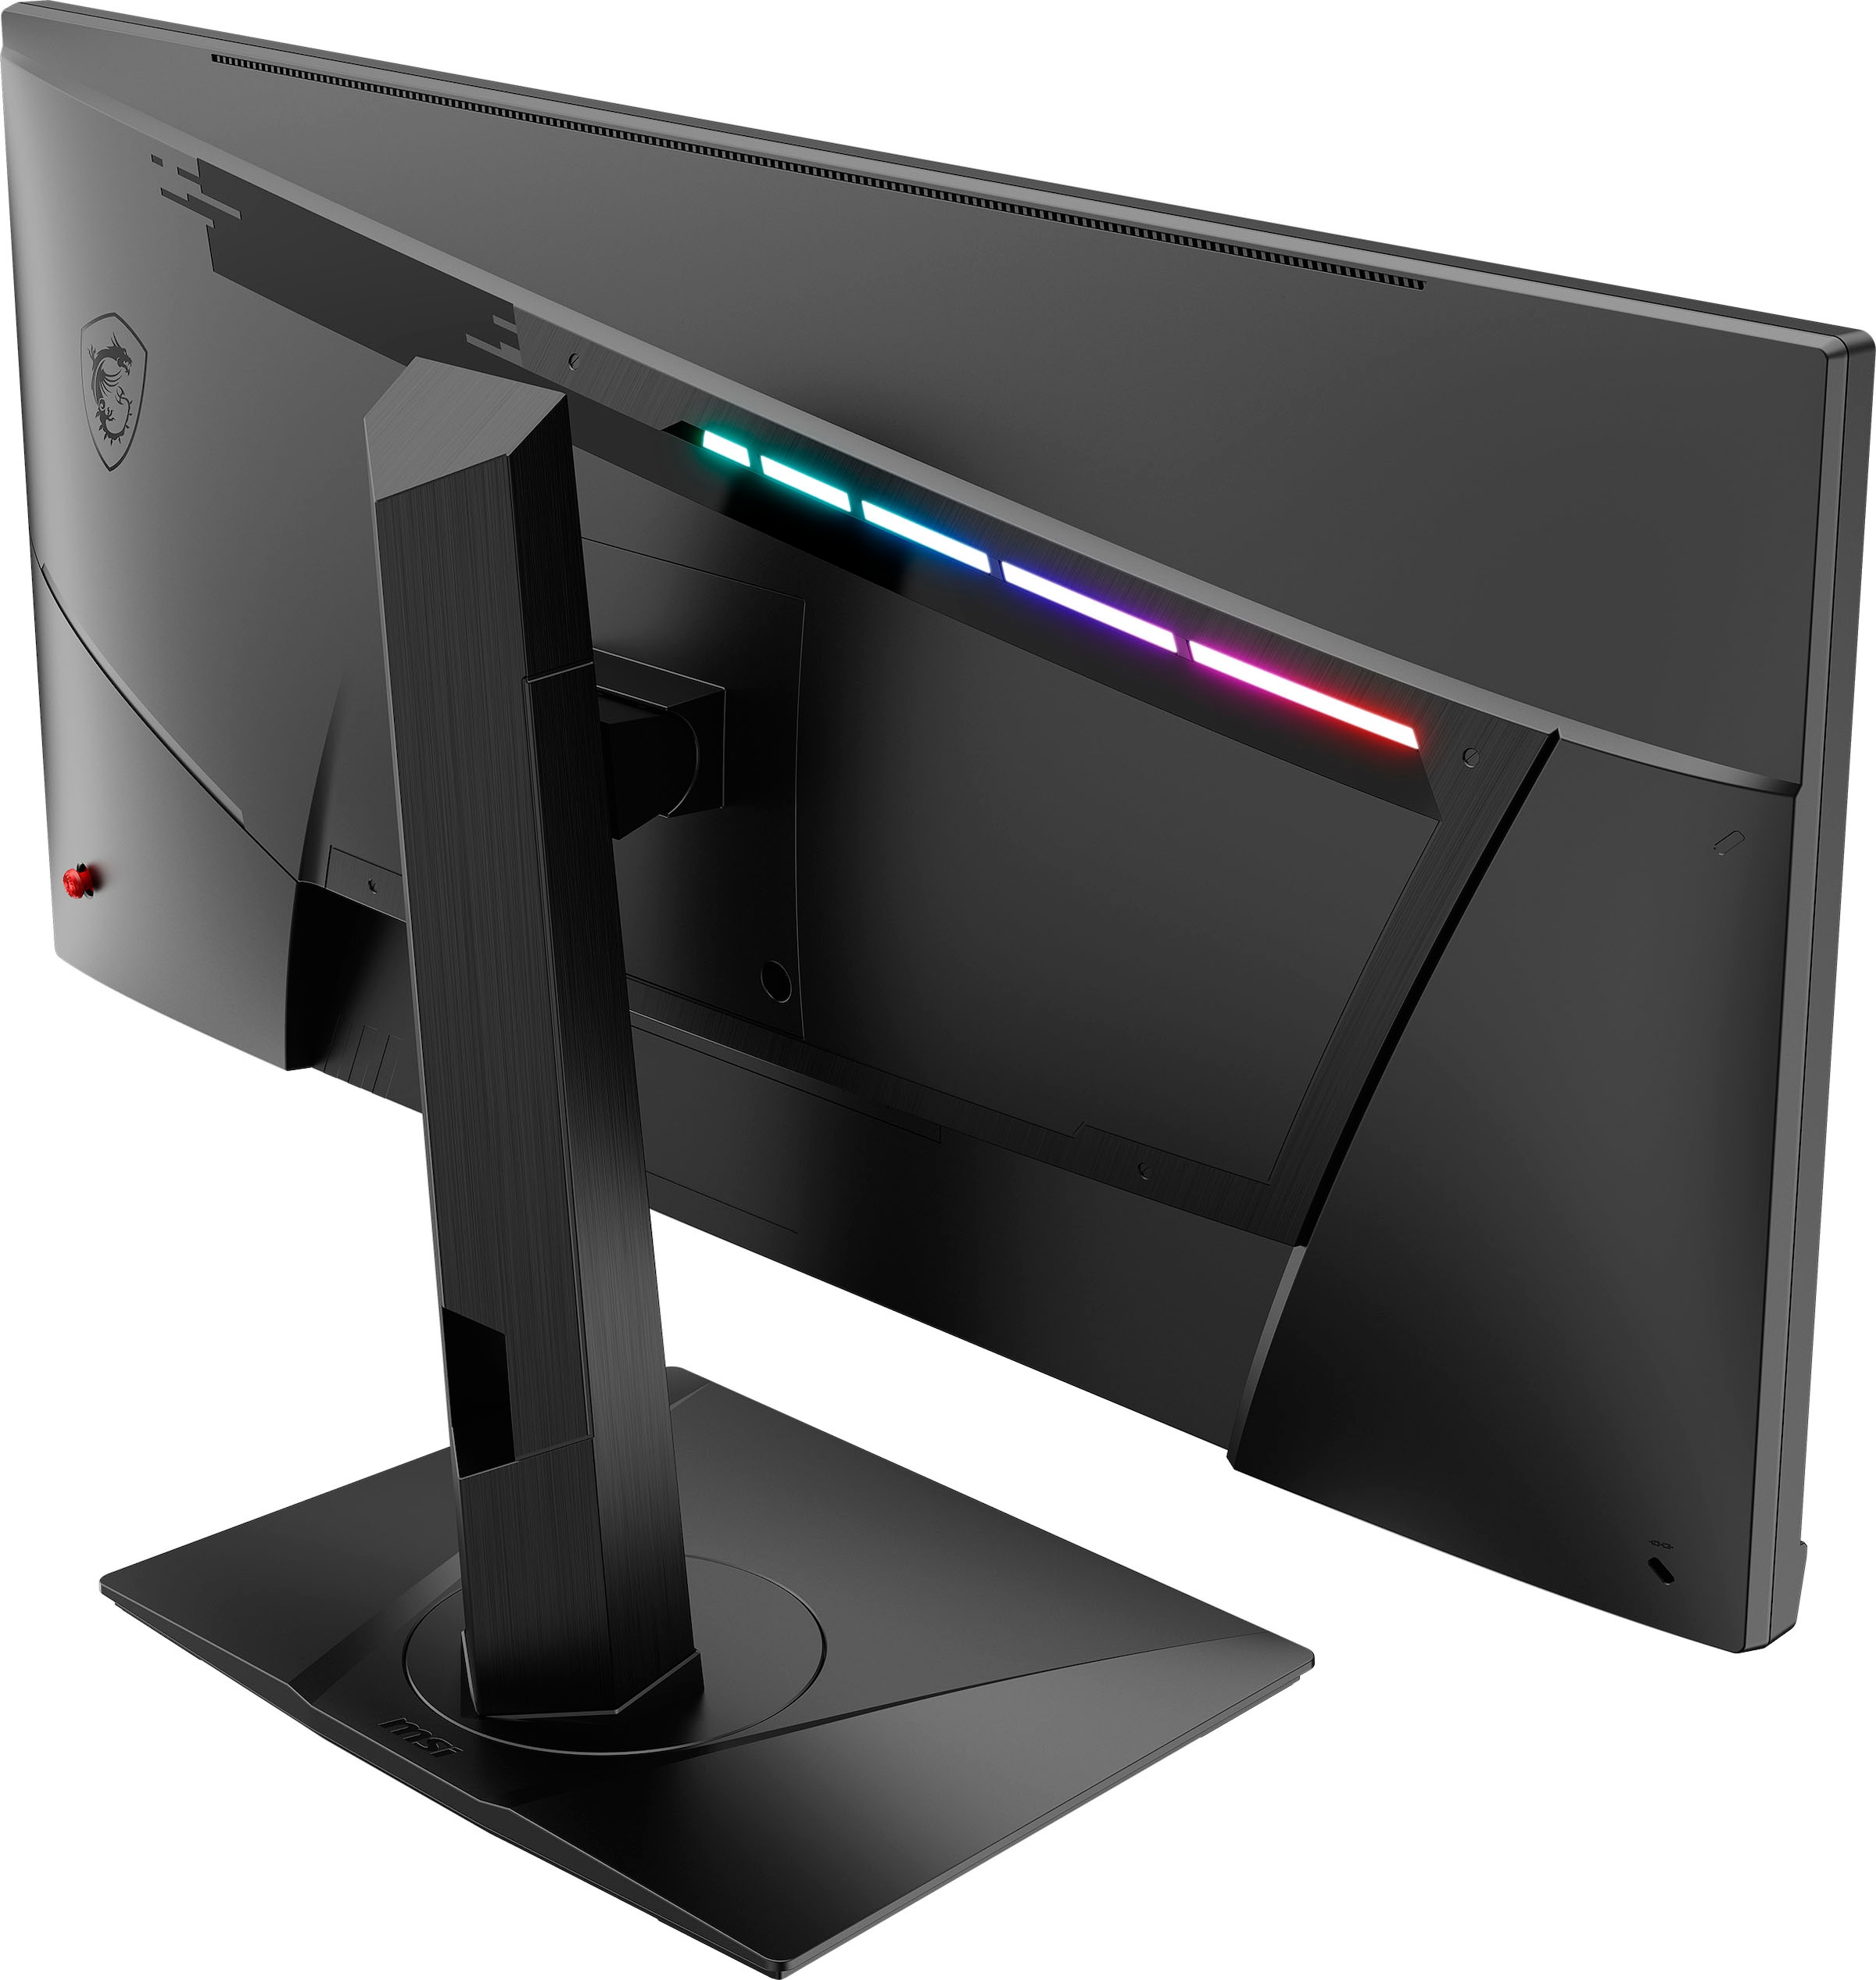 MSI Gaming-LED-Monitor »Optix MAG301RF«, 75 cm/29,5 Zoll, 2560 x 1080 px, WFHD, 1 ms Reaktionszeit, 200 Hz, 3 Jahre Herstellergarantie, höhenverstellbar, USB-C